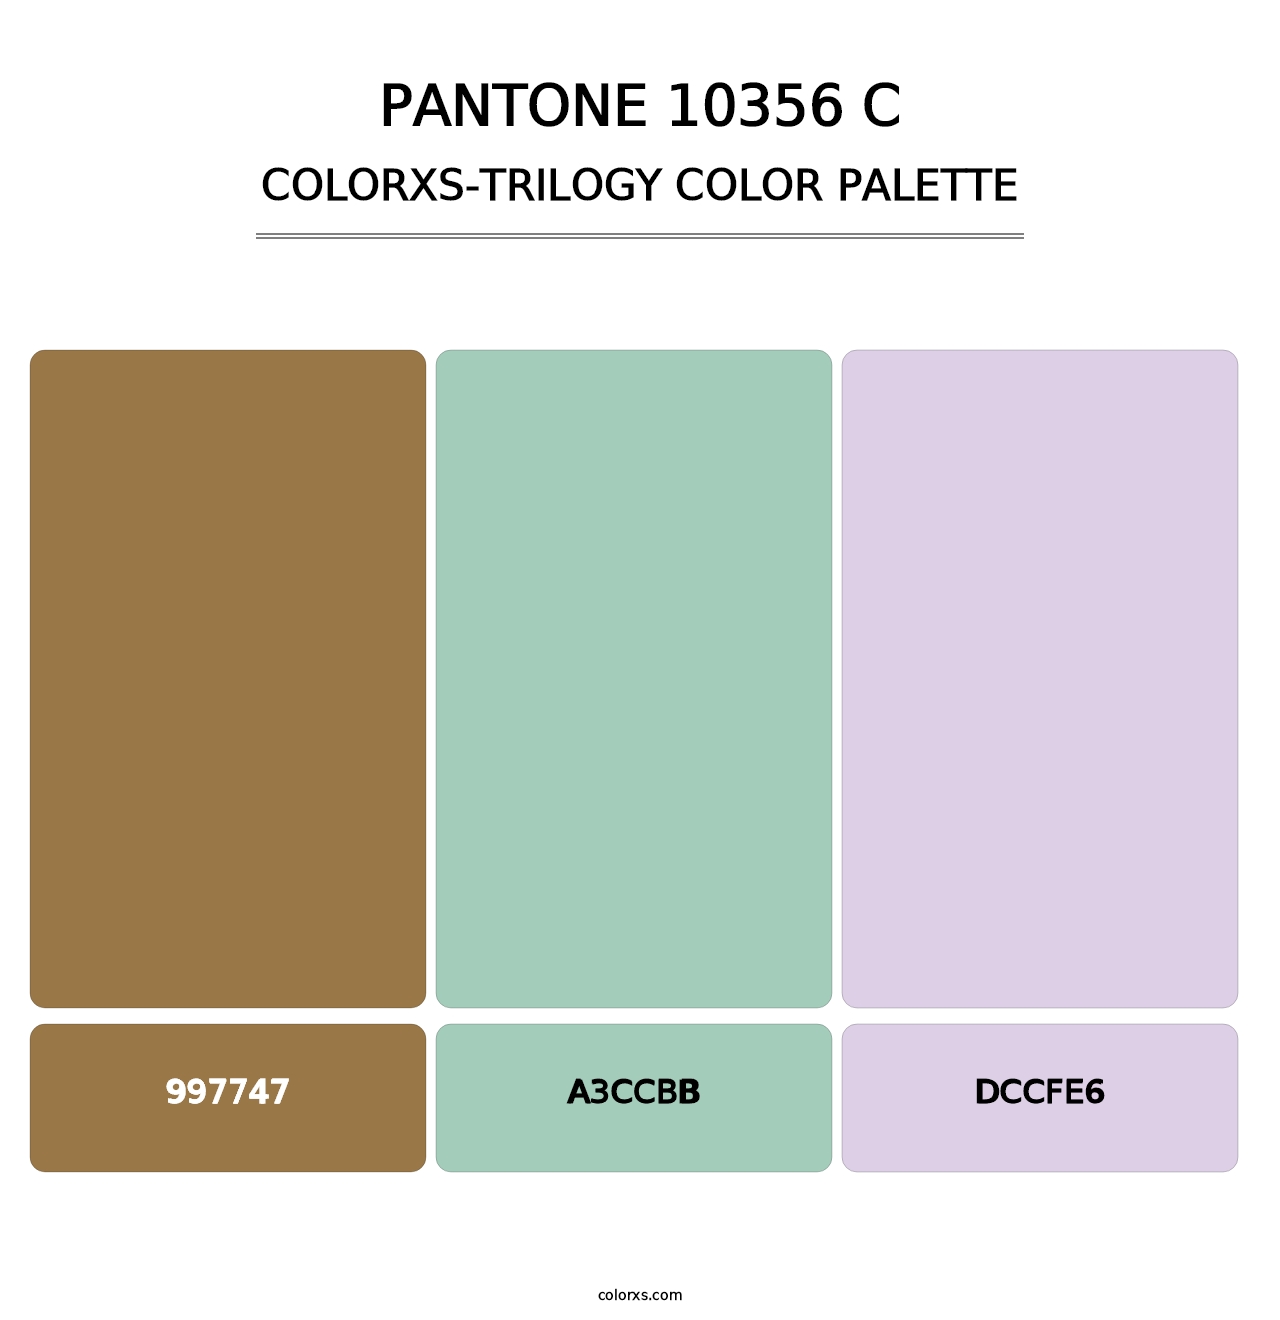 PANTONE 10356 C - Colorxs Trilogy Palette